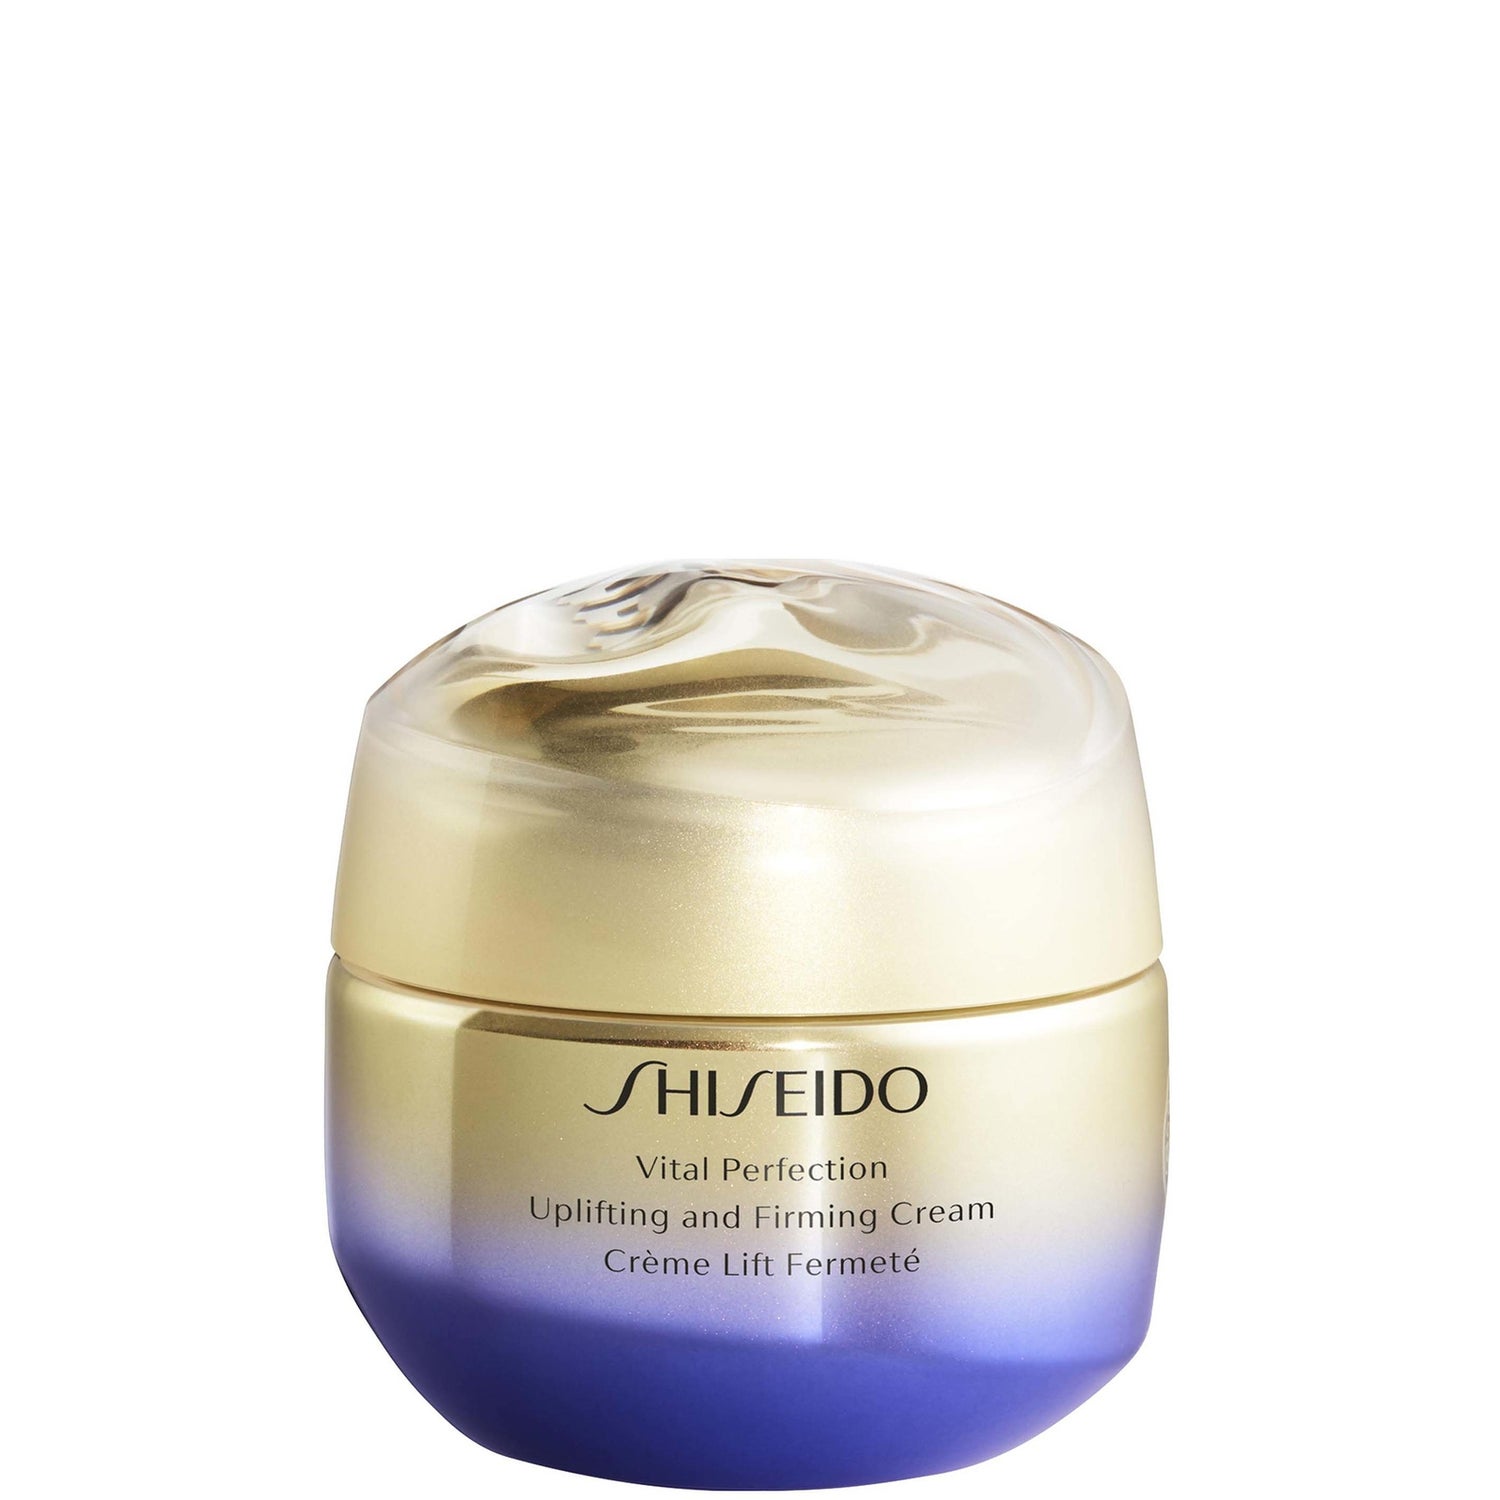 Подтягивающий и укрепляющий крем Shiseido Vital Perfection (различных размеров)